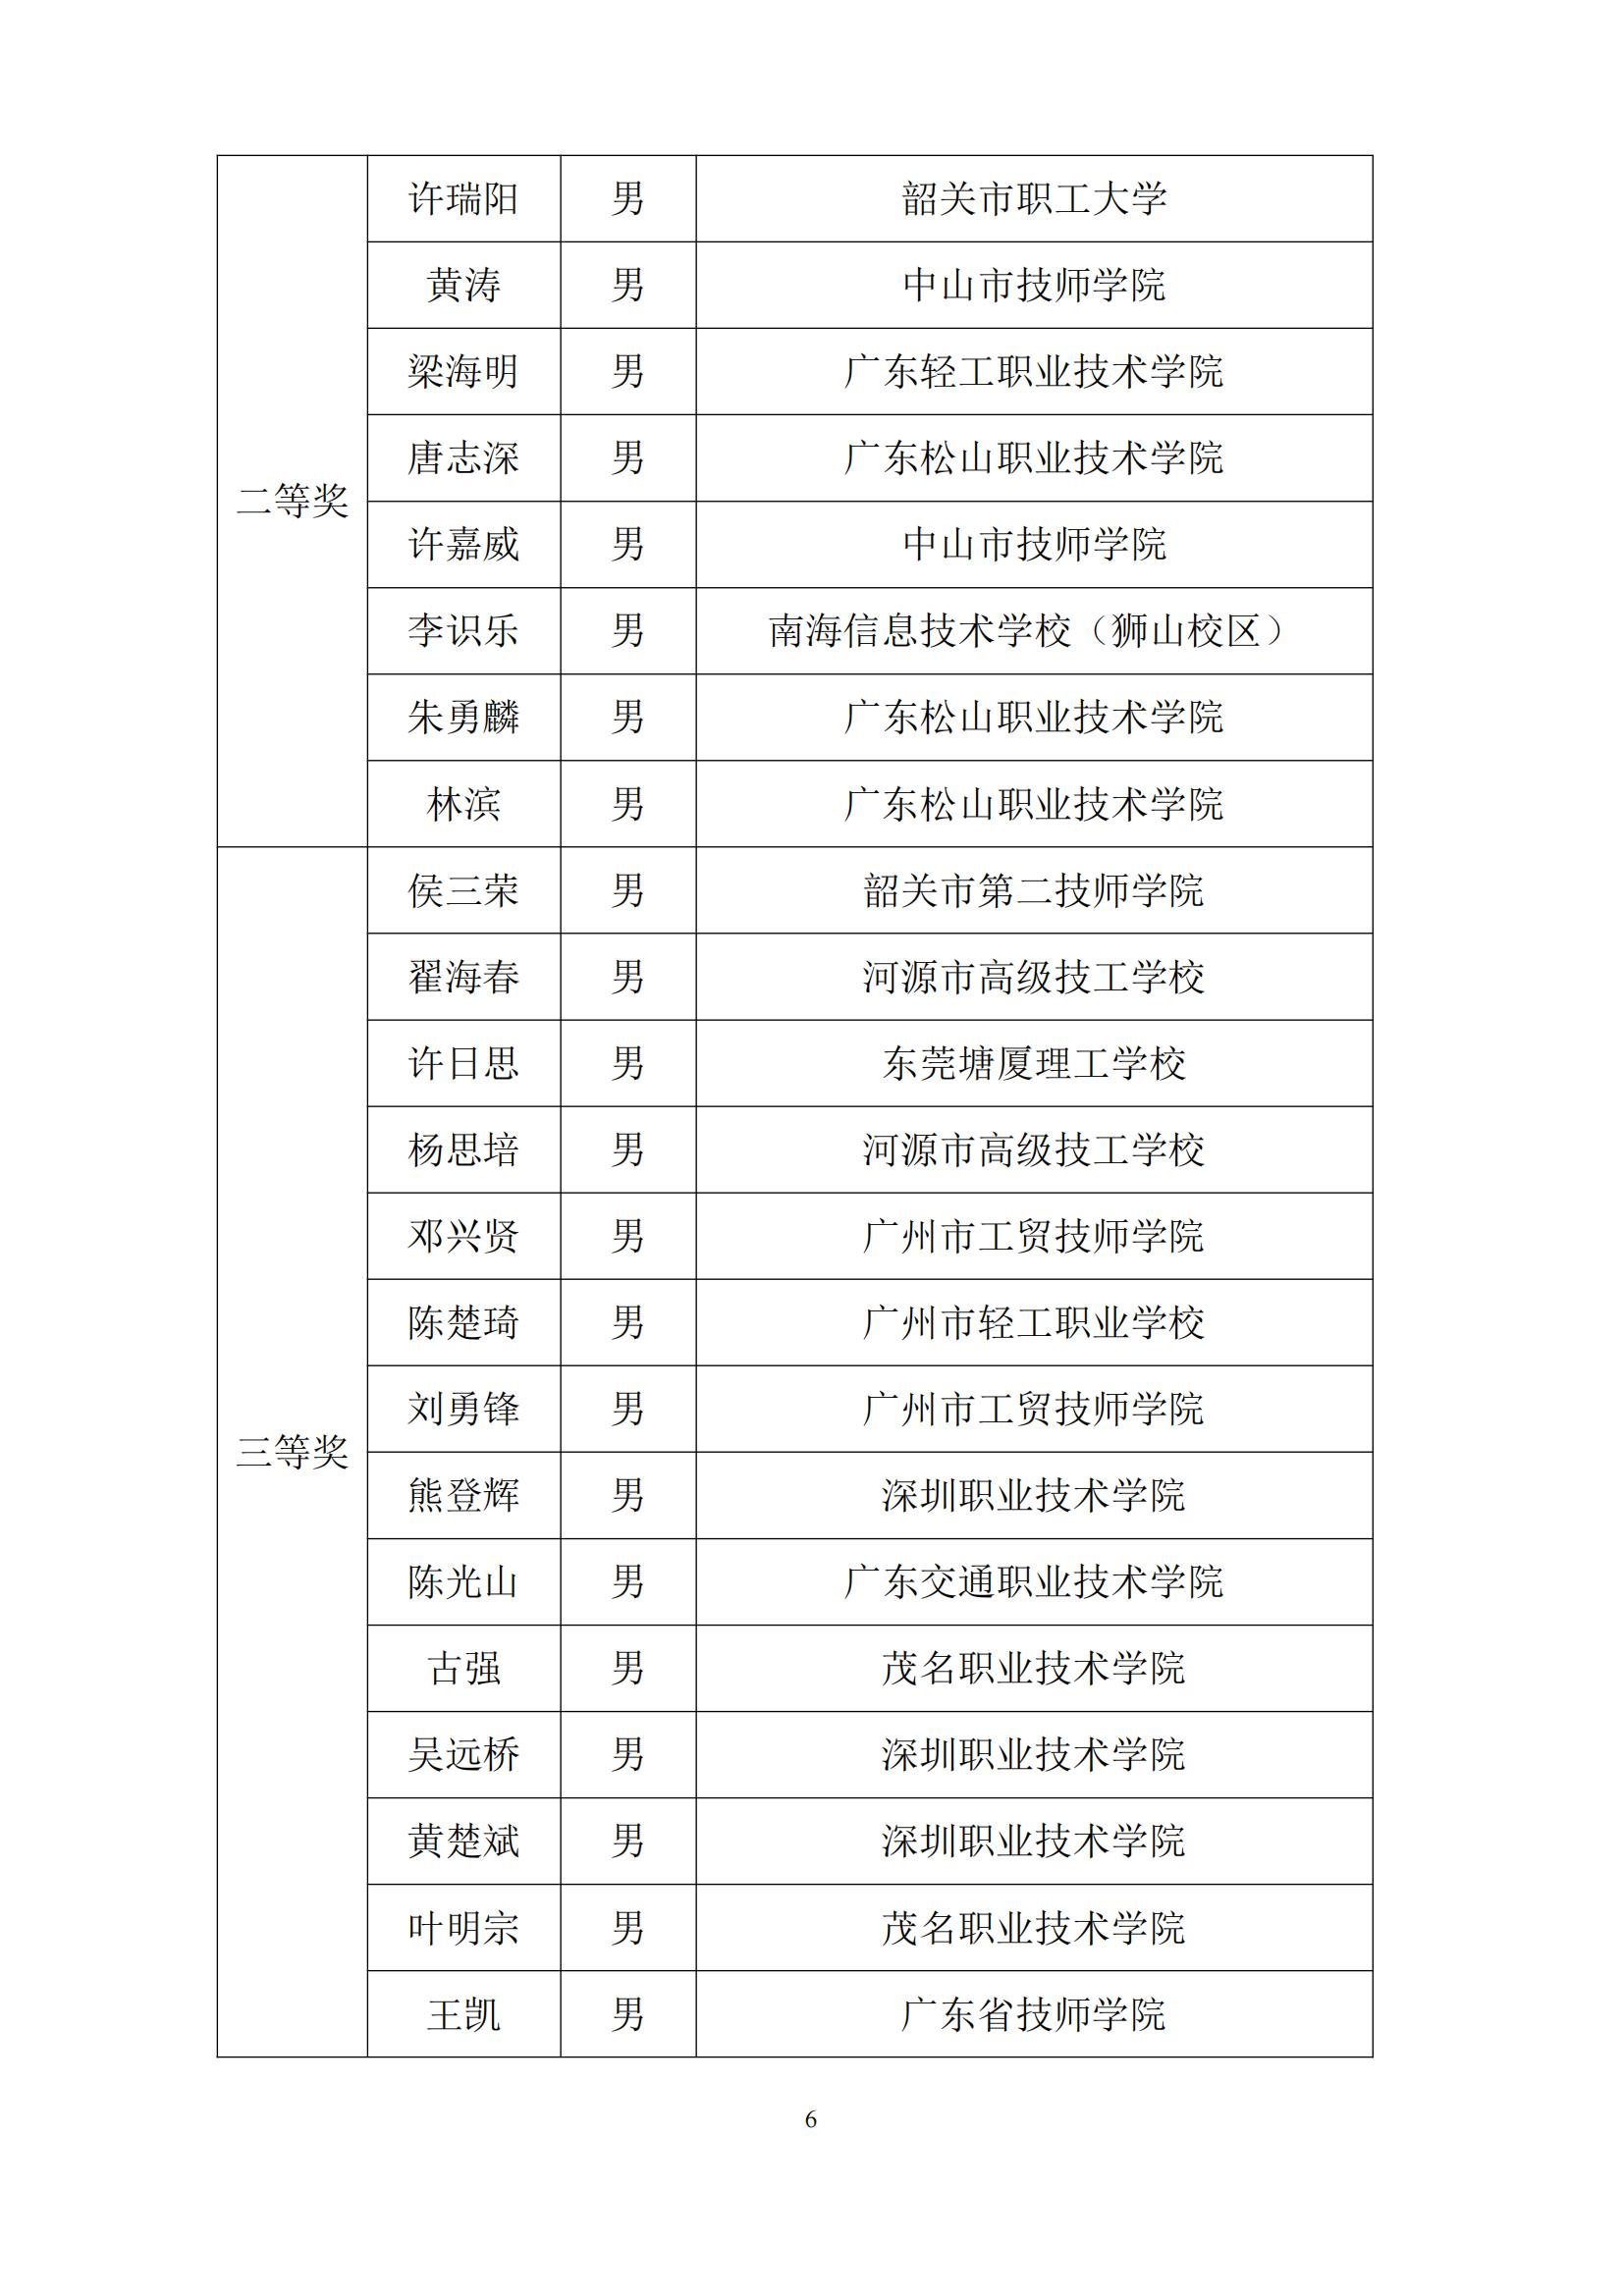 2011 年广东省可编程序系统控制设计师职业技能竞赛_05.jpg